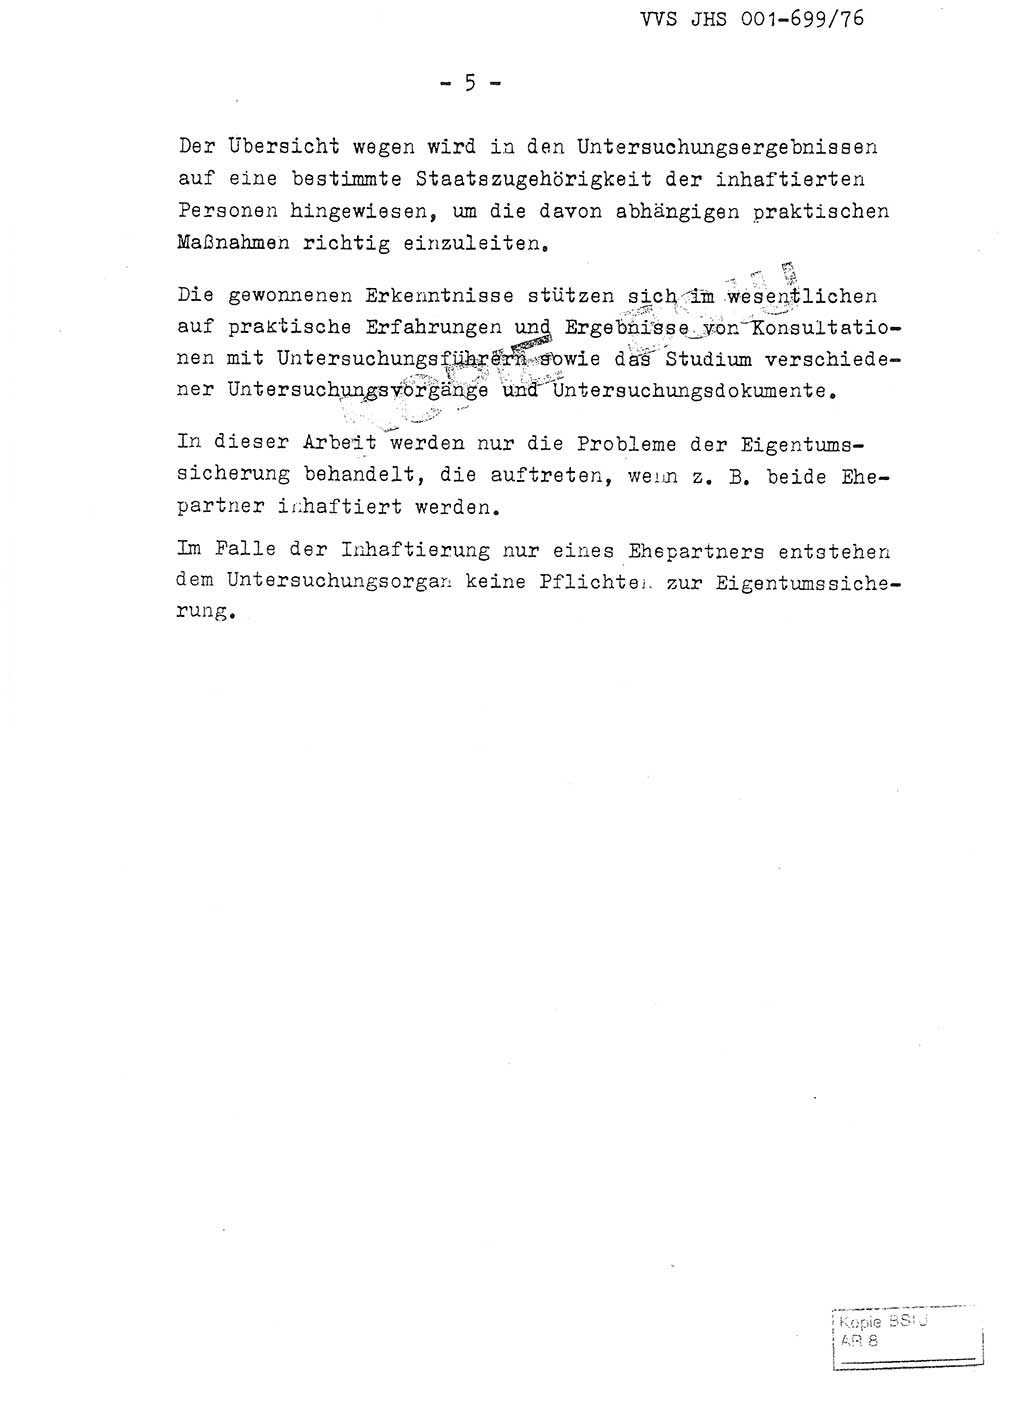 Fachschulabschlußarbeit Leutnant Volkmar Taubert (HA Ⅸ/9), Leutnant Axel Naumann (HA Ⅸ/9), Unterleutnat Detlef Debski (HA Ⅸ/9), Ministerium für Staatssicherheit (MfS) [Deutsche Demokratische Republik (DDR)], Juristische Hochschule (JHS), Vertrauliche Verschlußsache (VVS) 001-699/76, Potsdam 1976, Seite 5 (FS-Abschl.-Arb. MfS DDR JHS VVS 001-699/76 1976, S. 5)